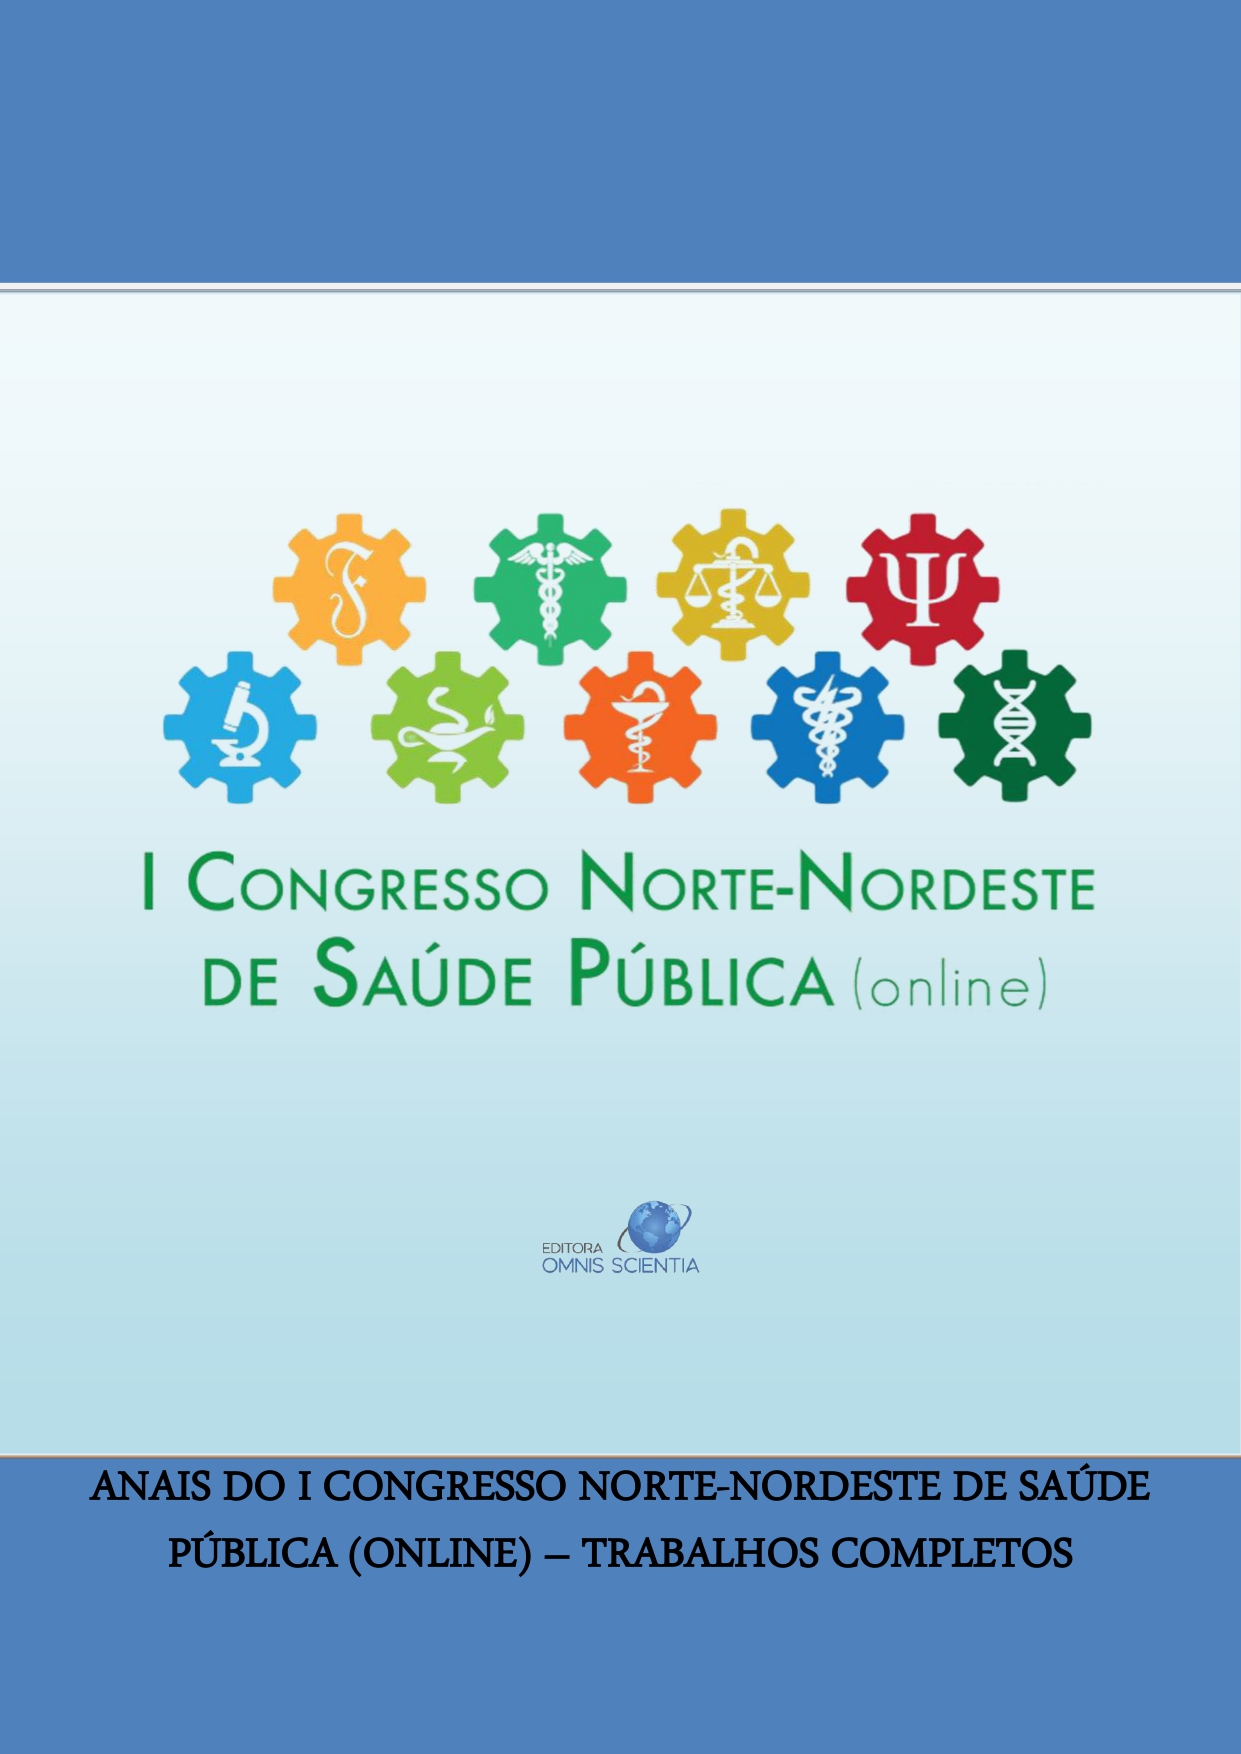 ANAIS DO I CONGRESSO NORTE-NORDESTE DE SAÚDE PÚBLICA (ONLINE) – TRABALHOS COMPLETOS